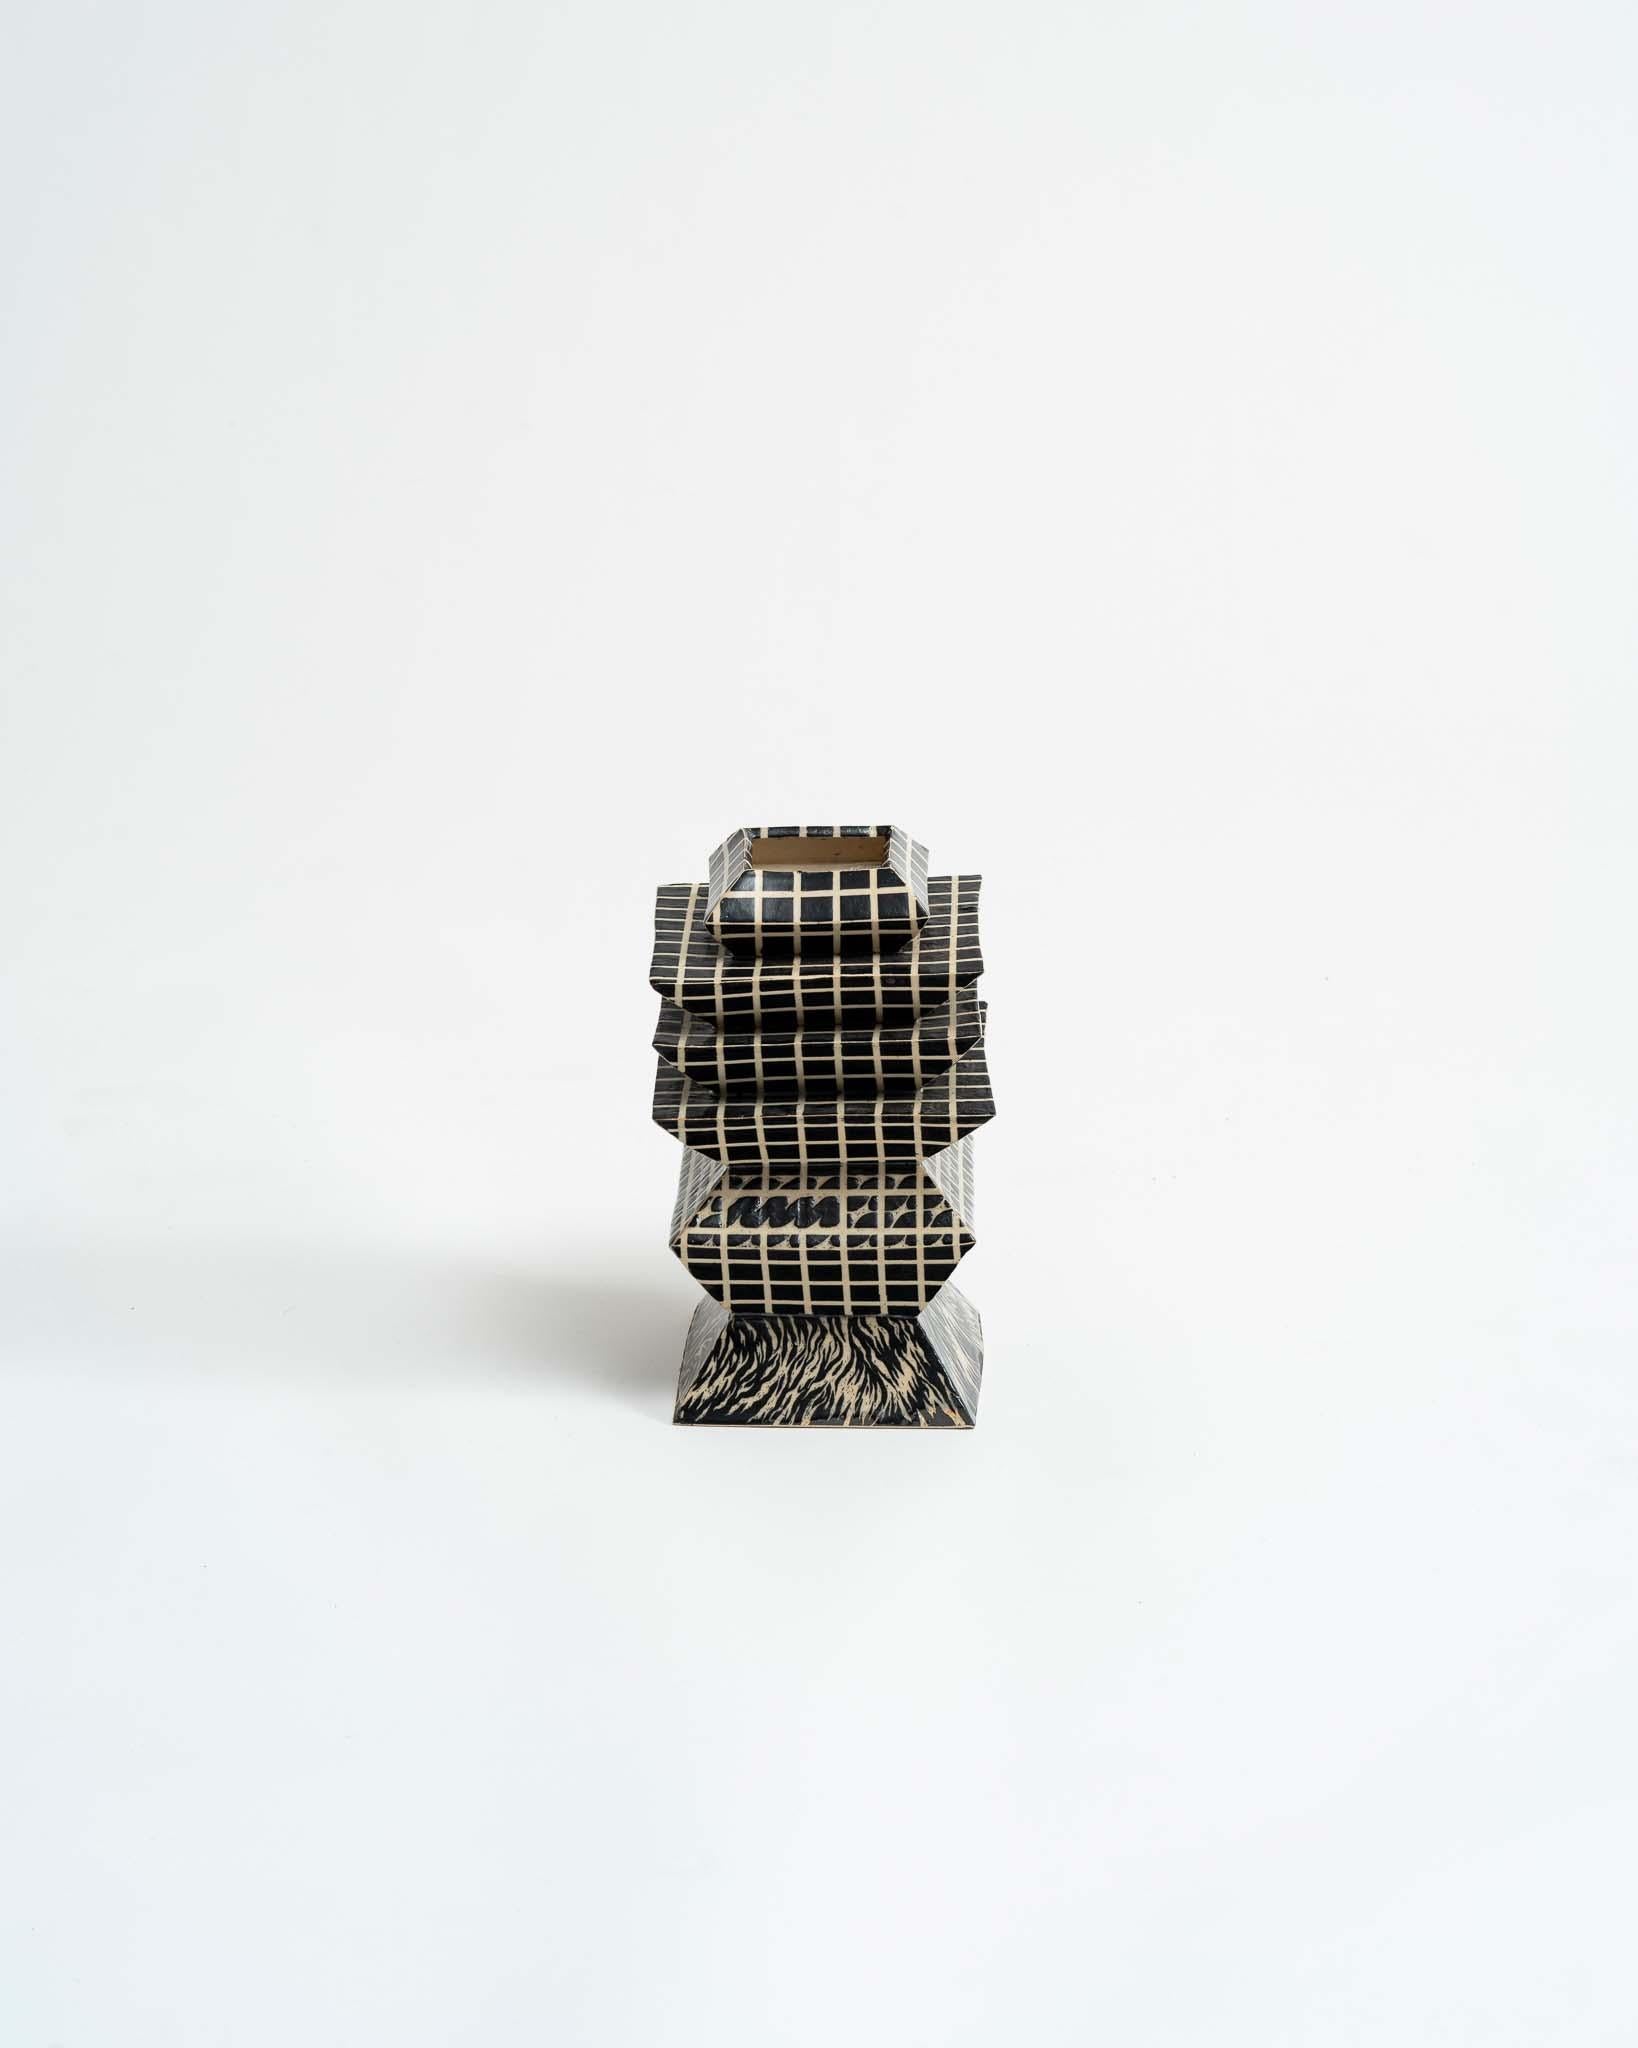 Glazed Alex Kovacs, Small Ritual Vessel, Bold Graphic Contemporary Ceramic Vase